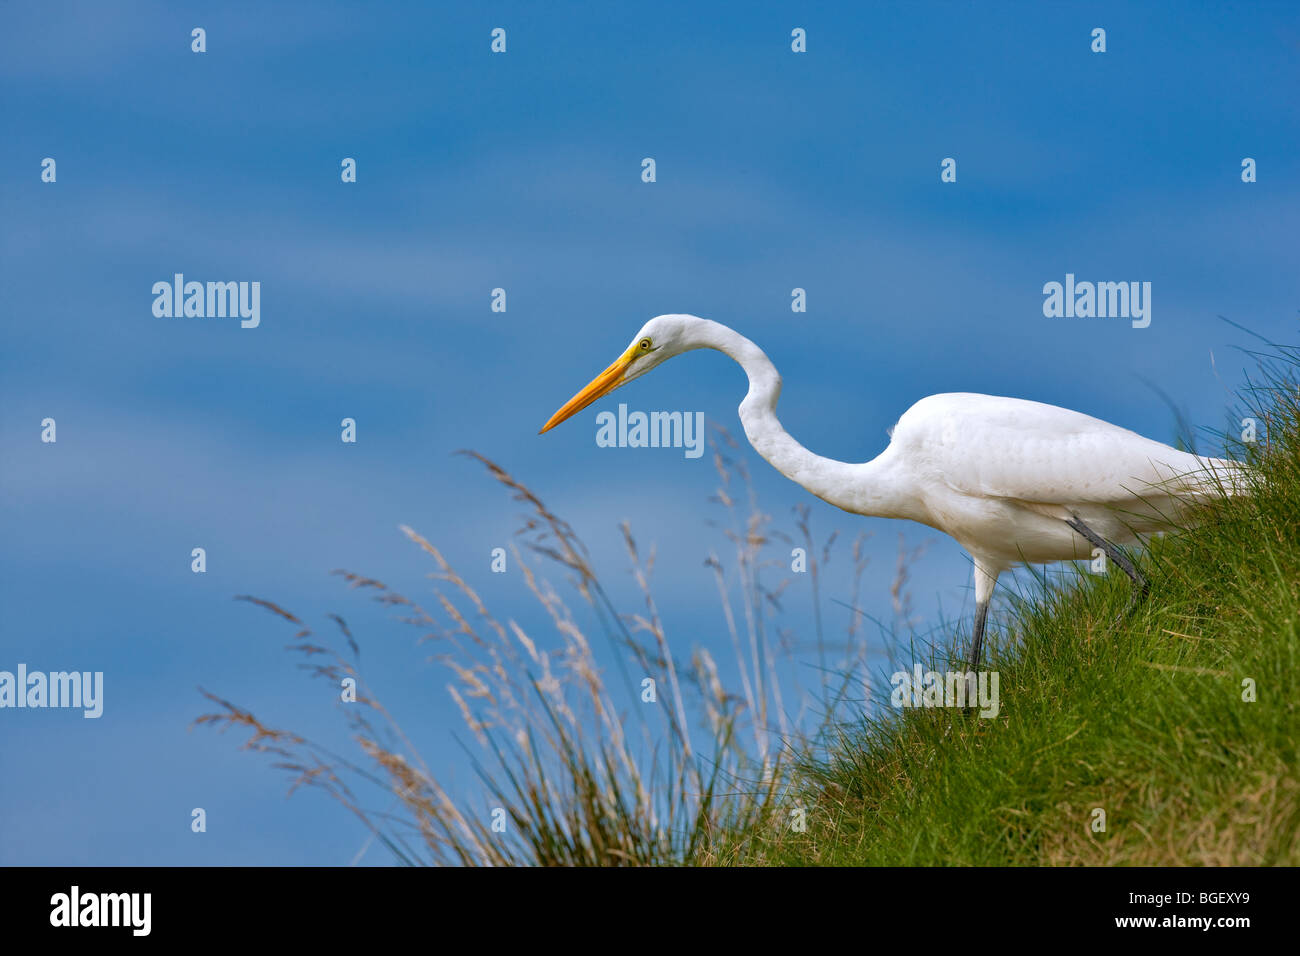 Great Egret (Ardea alba) hunting on grassy slope. Near Napa Valley, California Stock Photo